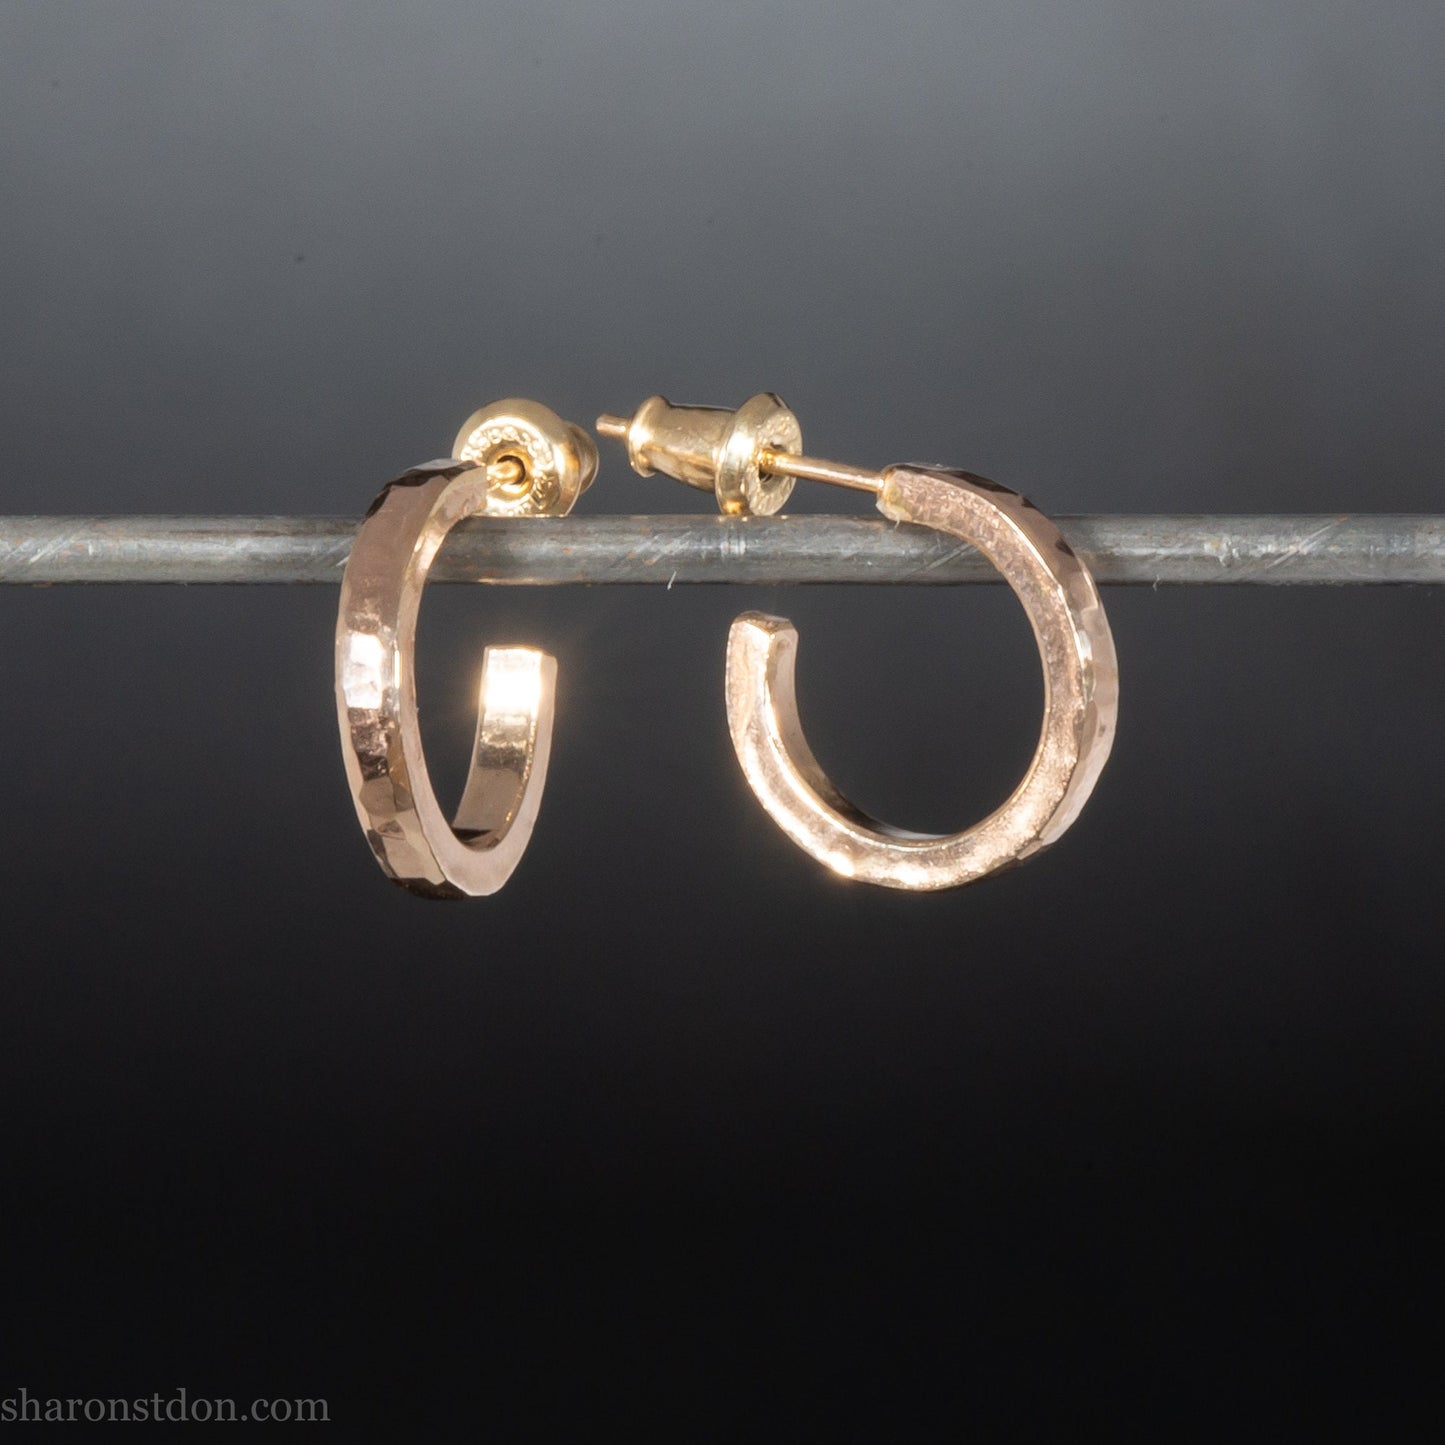 14mm x 2mm small 14k gold hoop earrings | Handmade, solid hammered gold hoop earrings | Handmade, eco conscious gift for men or women